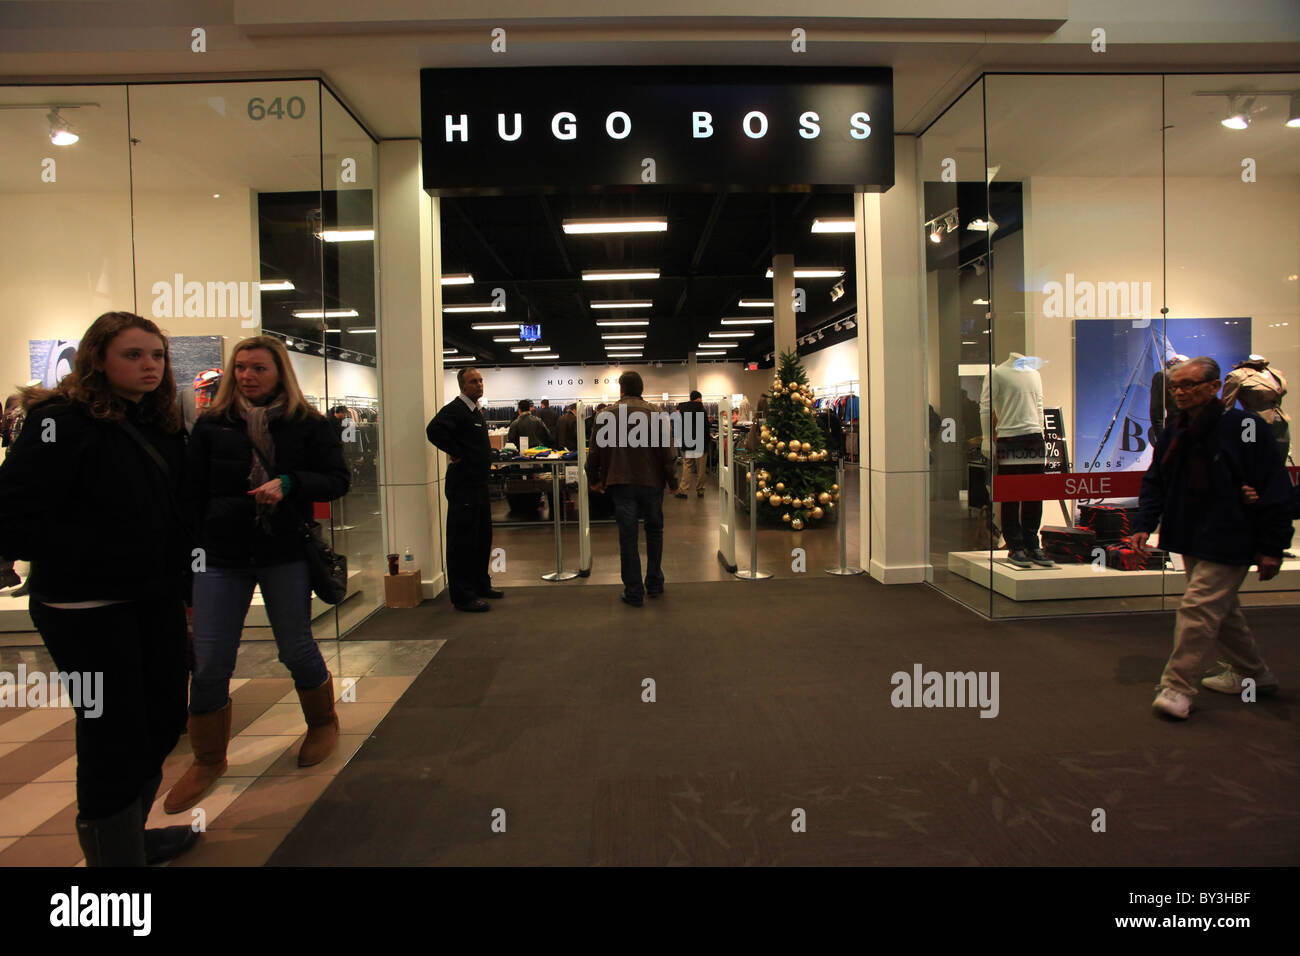 Hugo boss outlet Banque de photographies et d'images à haute résolution -  Alamy